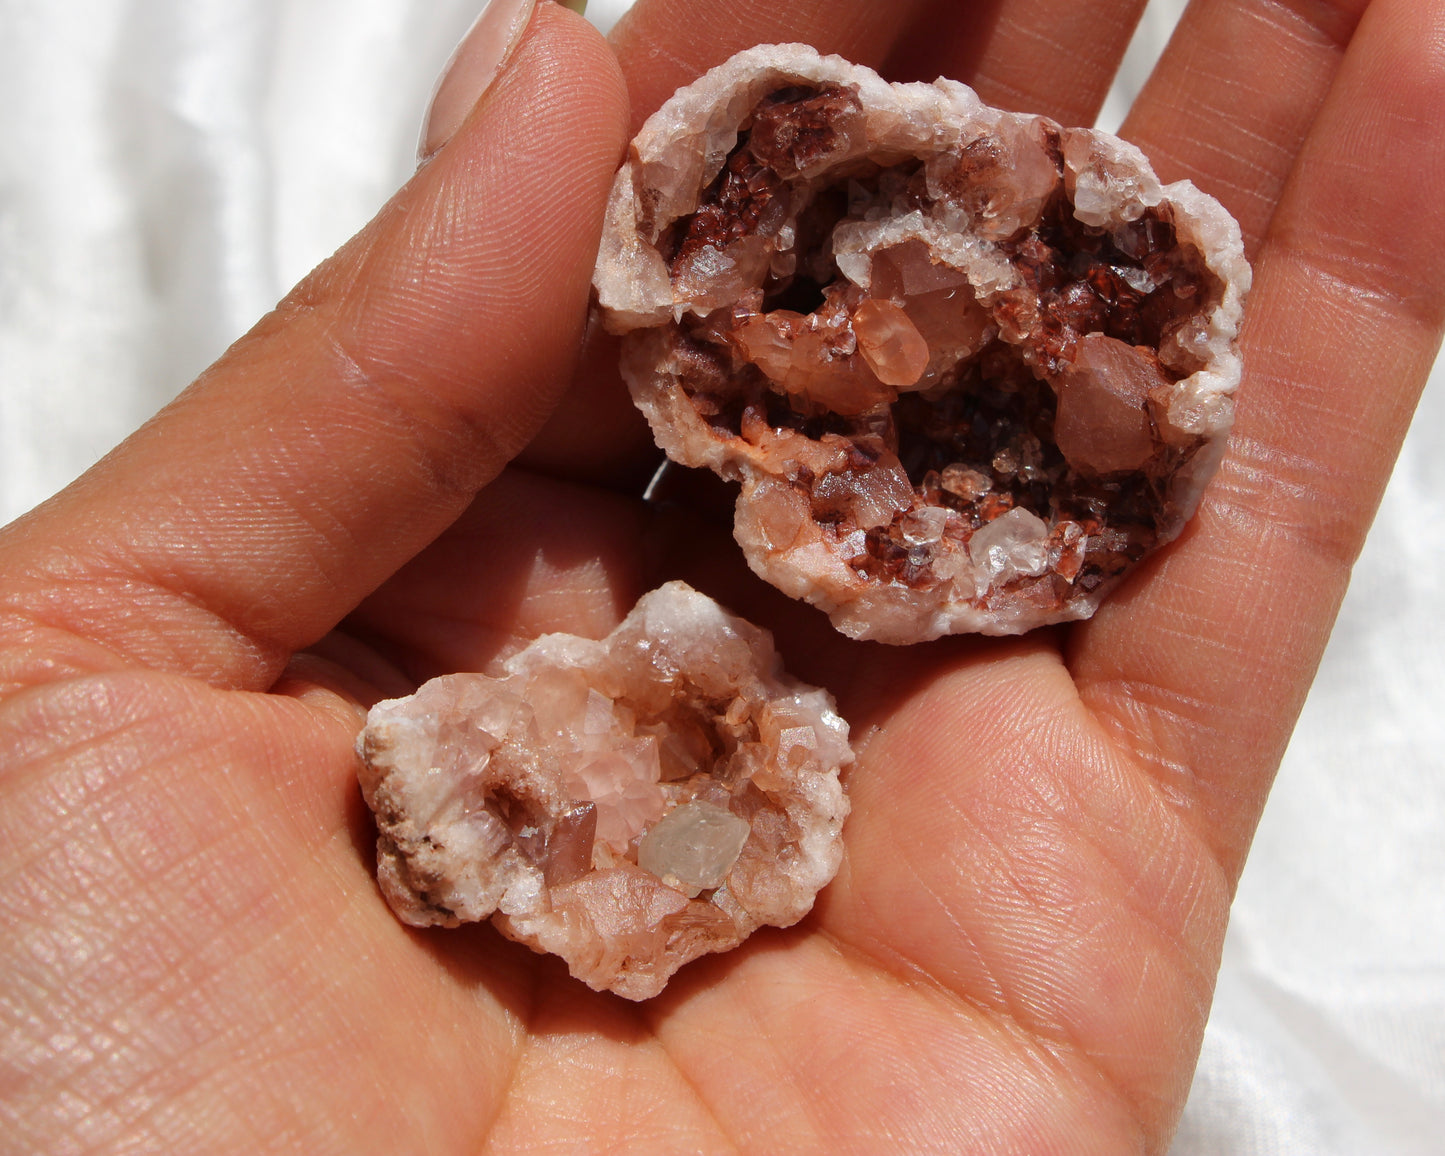 Pink Amethyst Geodes